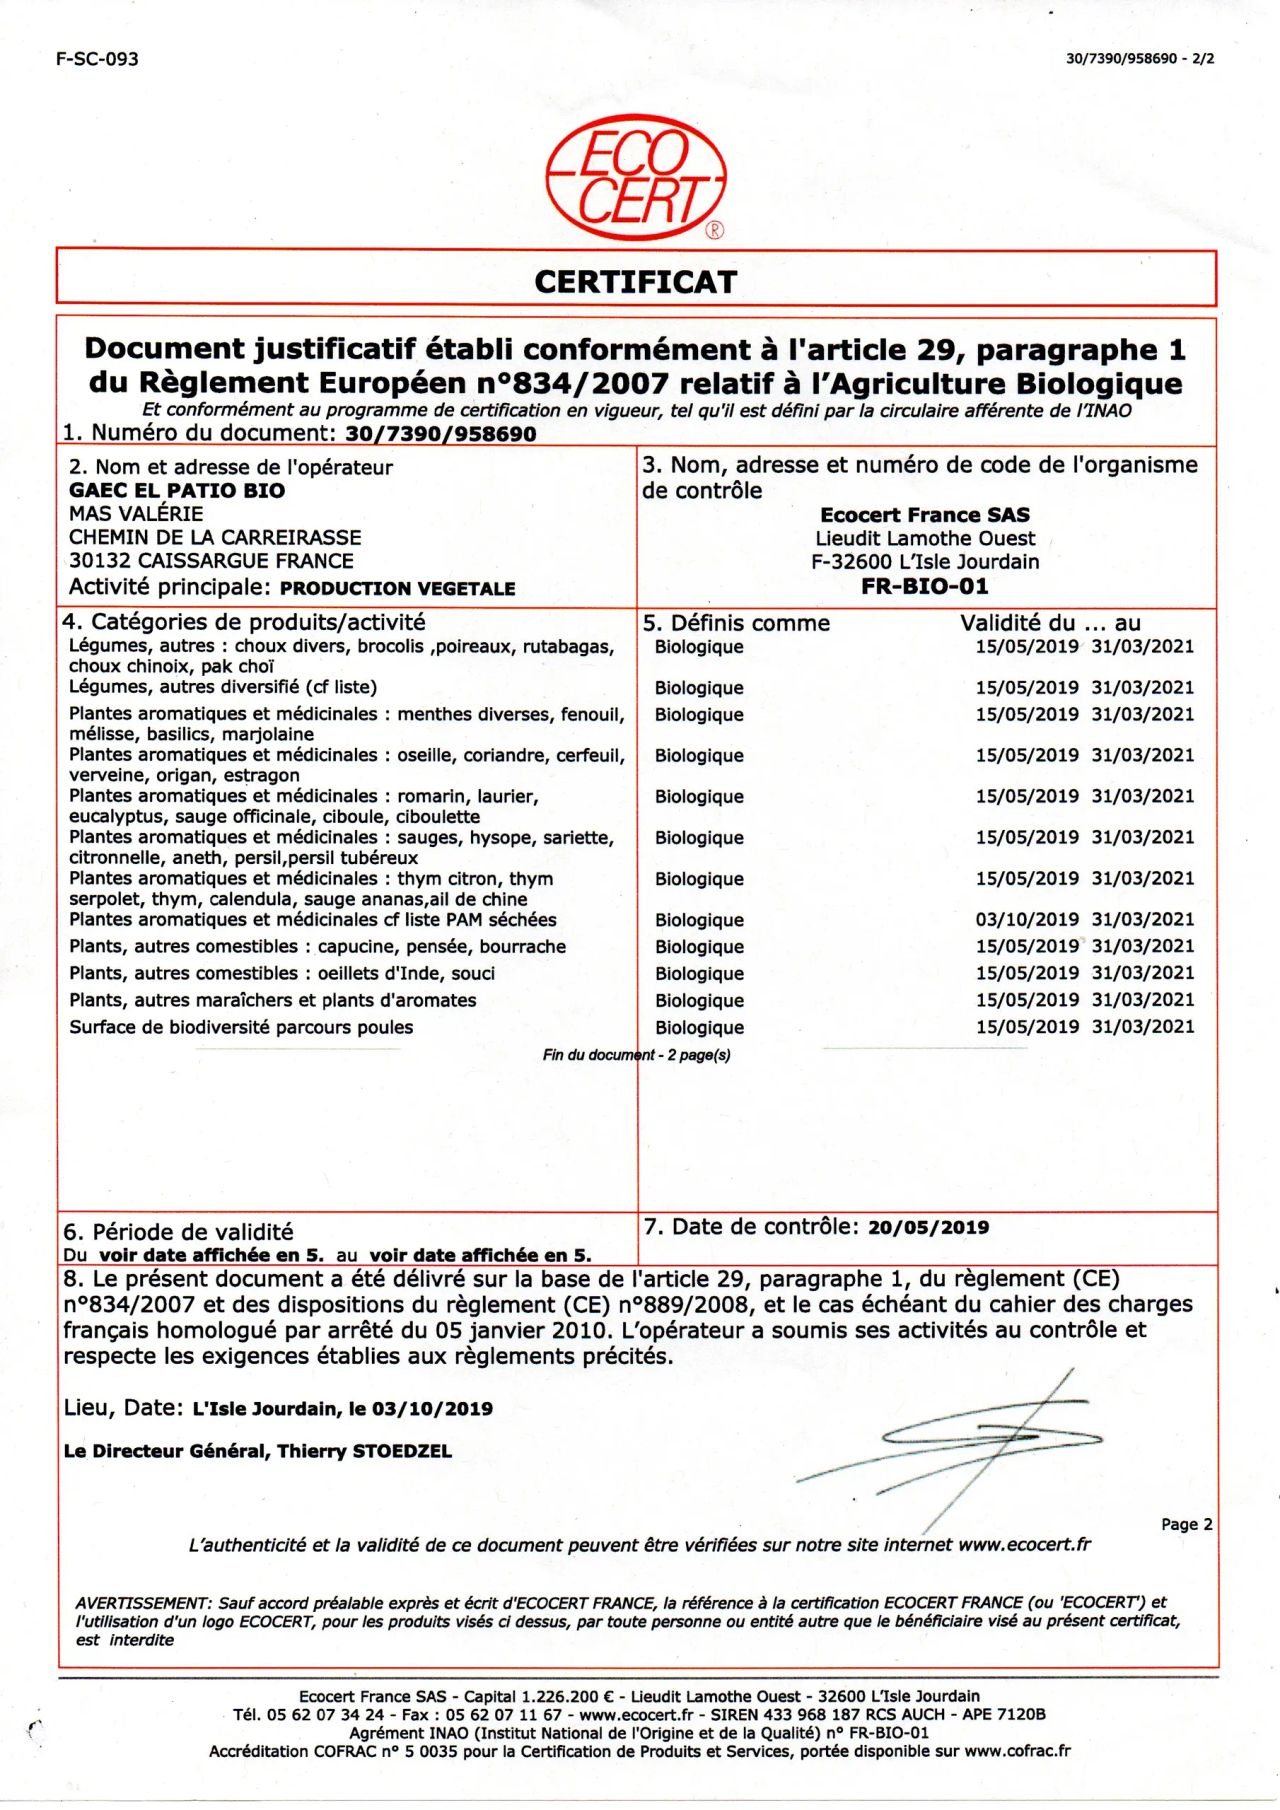 Certif-ecocert-03-2021196